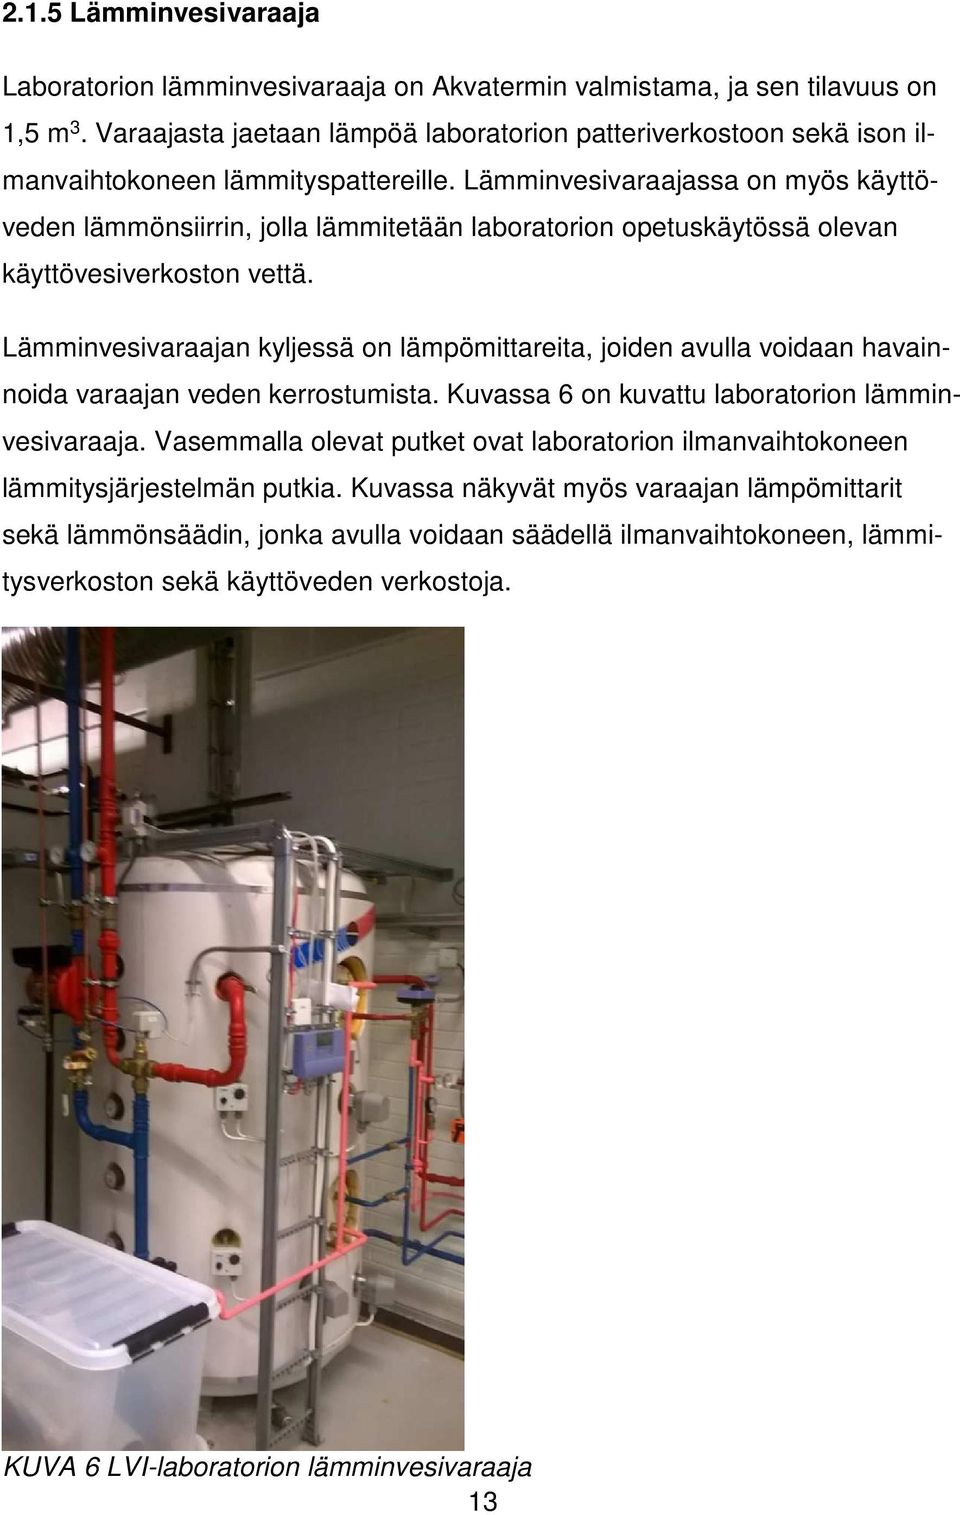 Lämminvesivaraajassa on myös käyttöveden lämmönsiirrin, jolla lämmitetään laboratorion opetuskäytössä olevan käyttövesiverkoston vettä.